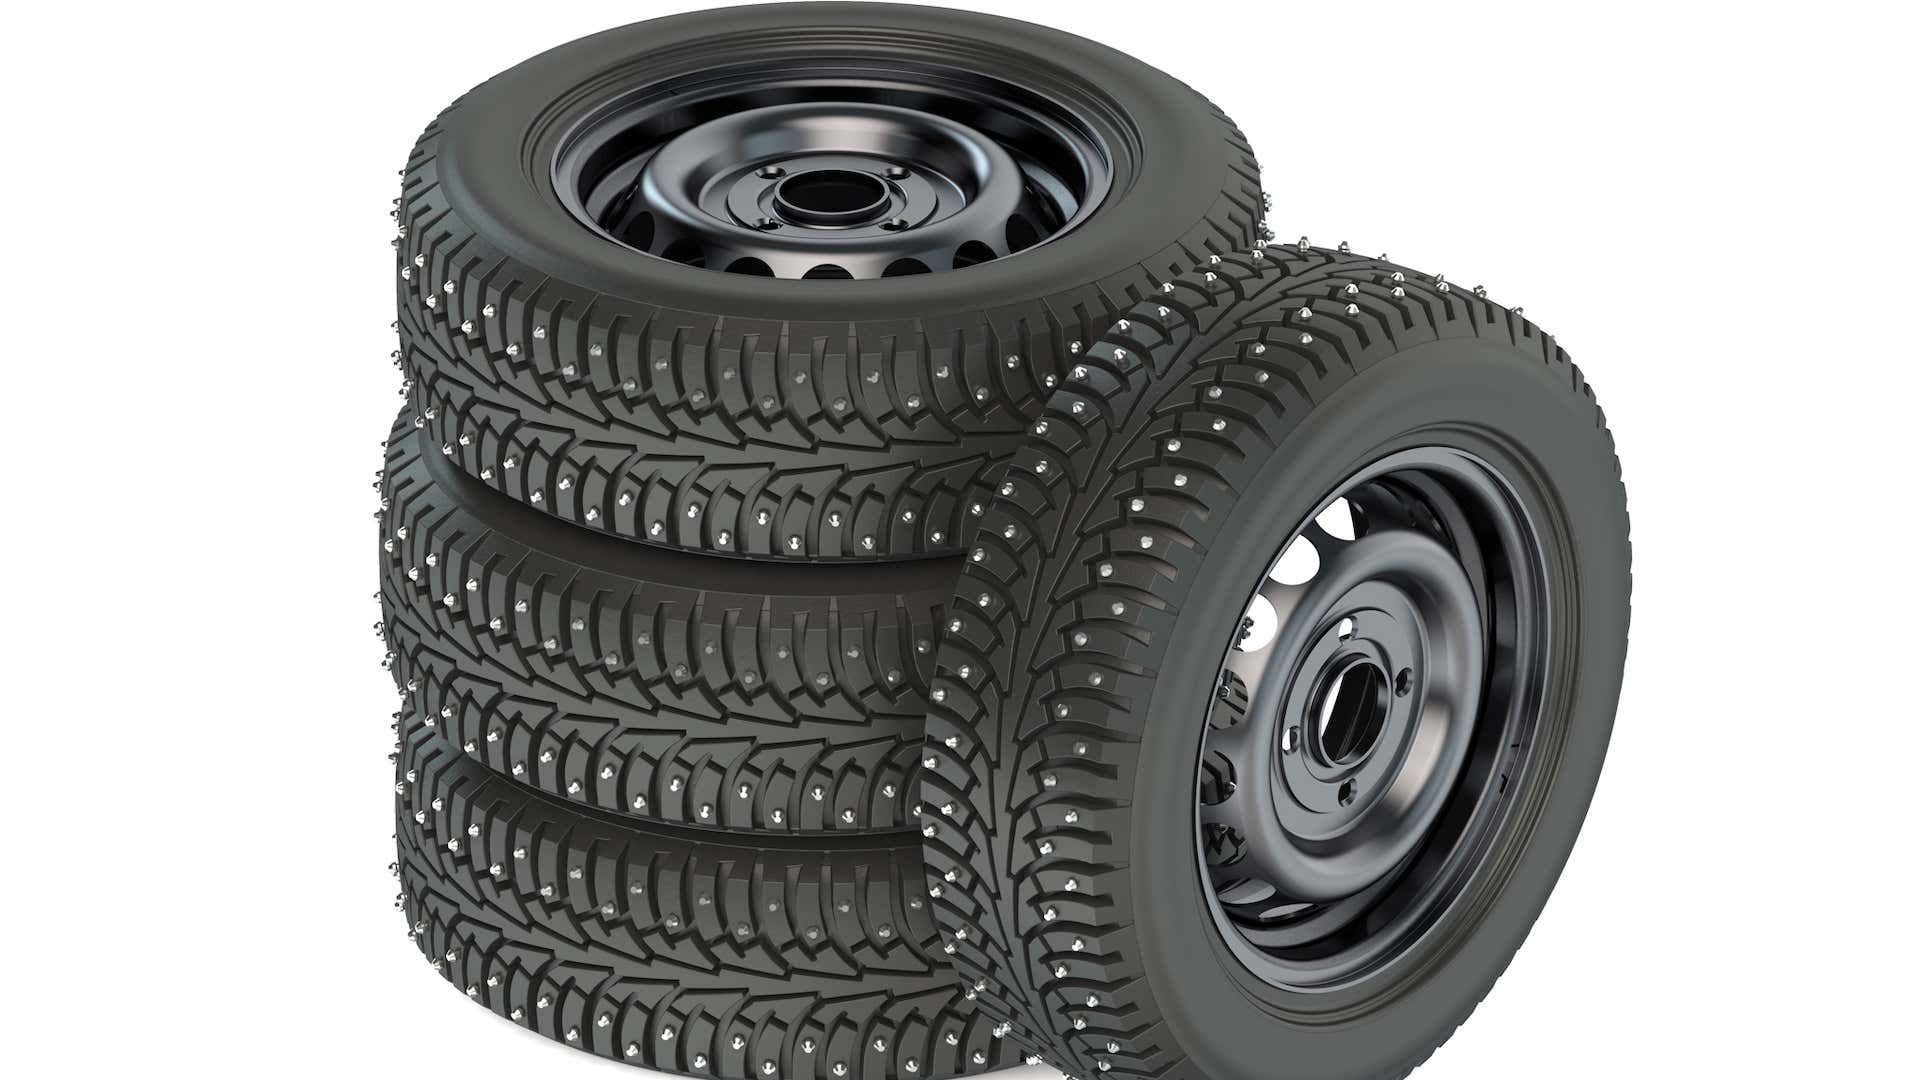 镶钉冬季轮胎在恶劣天气下提供终极抓地力。